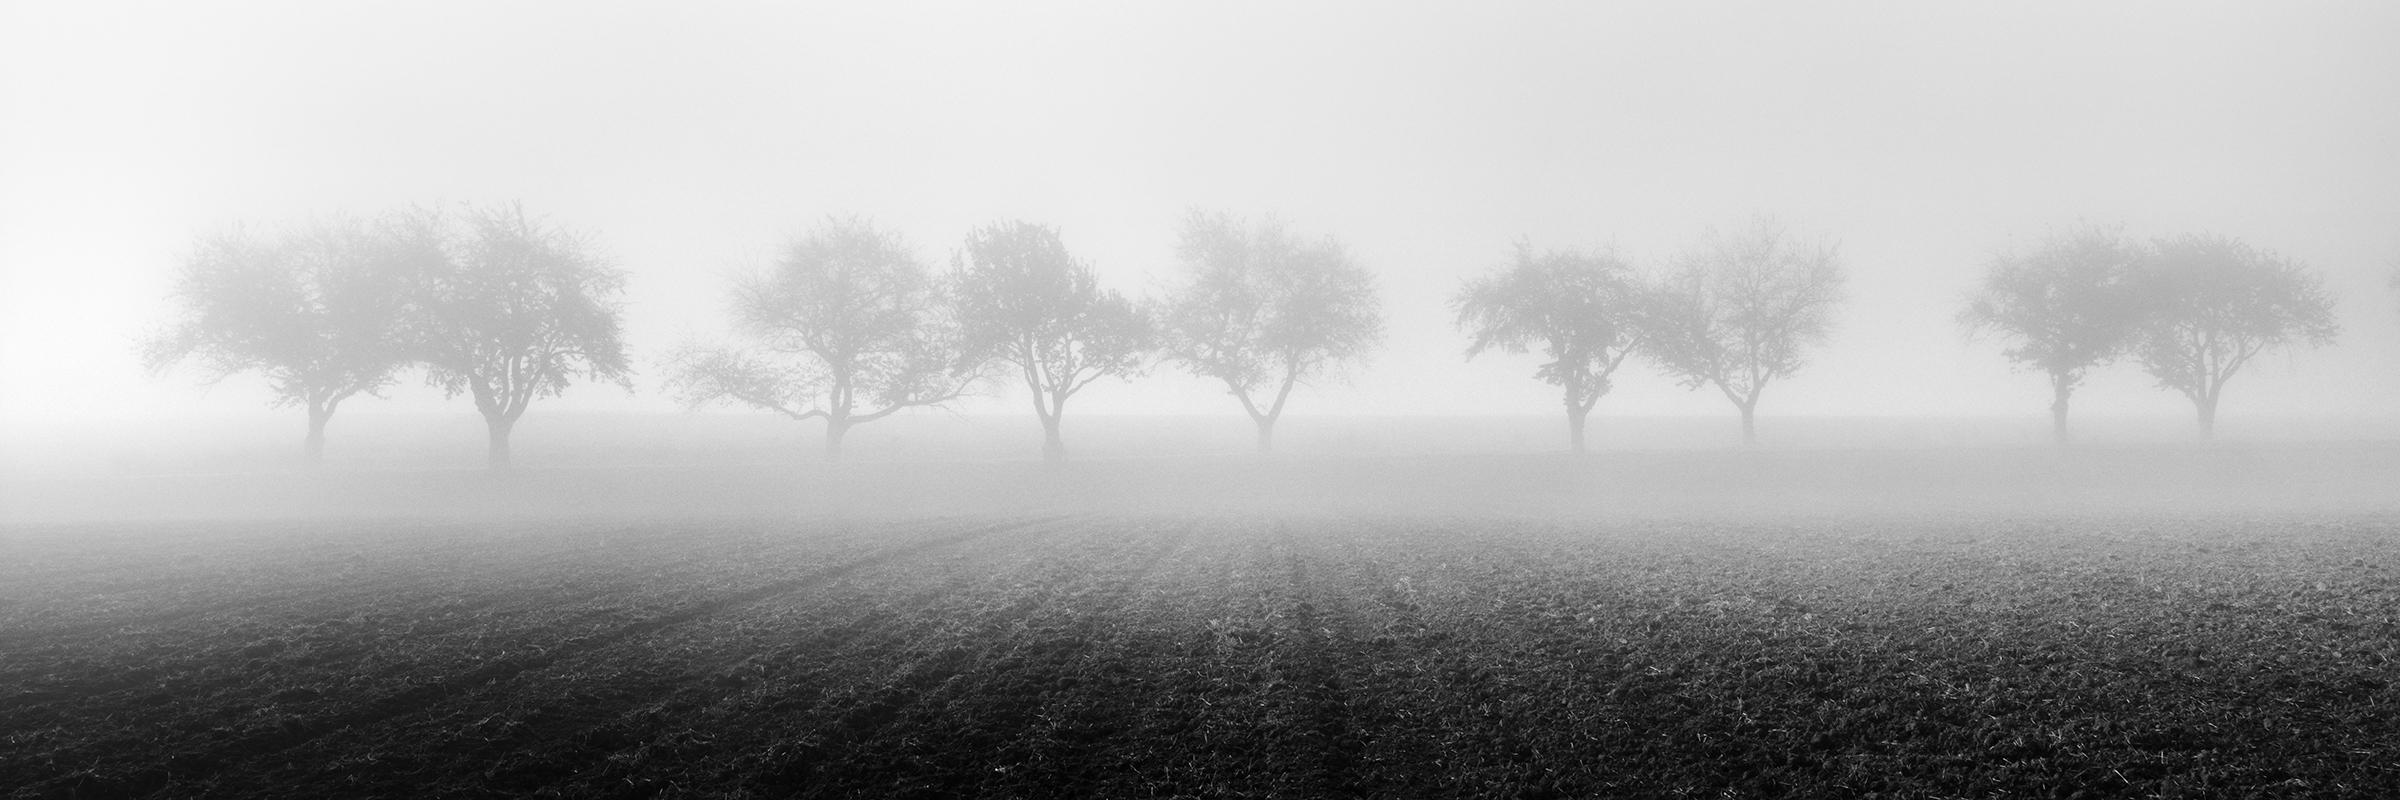 Foggy Morning, Reihe von Kirschbaumbäumen, Schwarz-Weiß-Fotografie, Kunstlandschaft